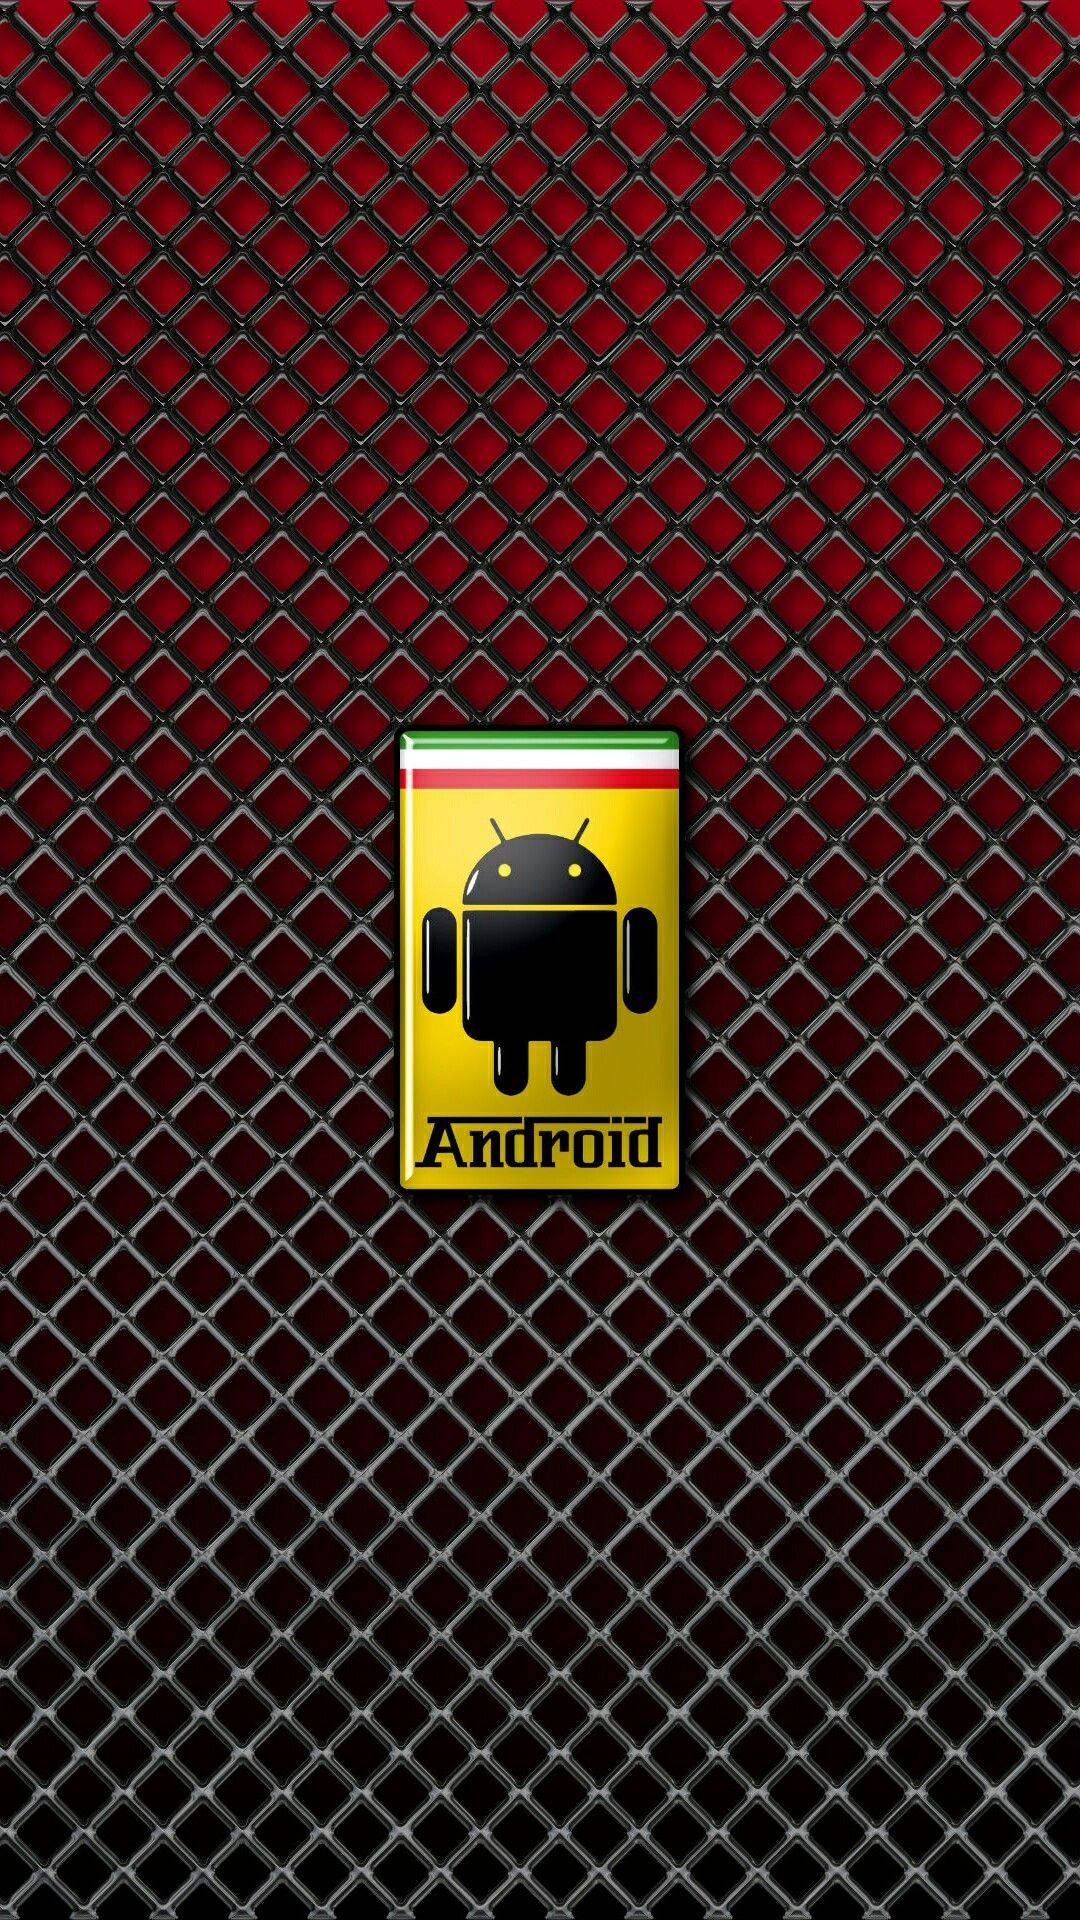 Androidutvecklarepå Jobbet. Wallpaper